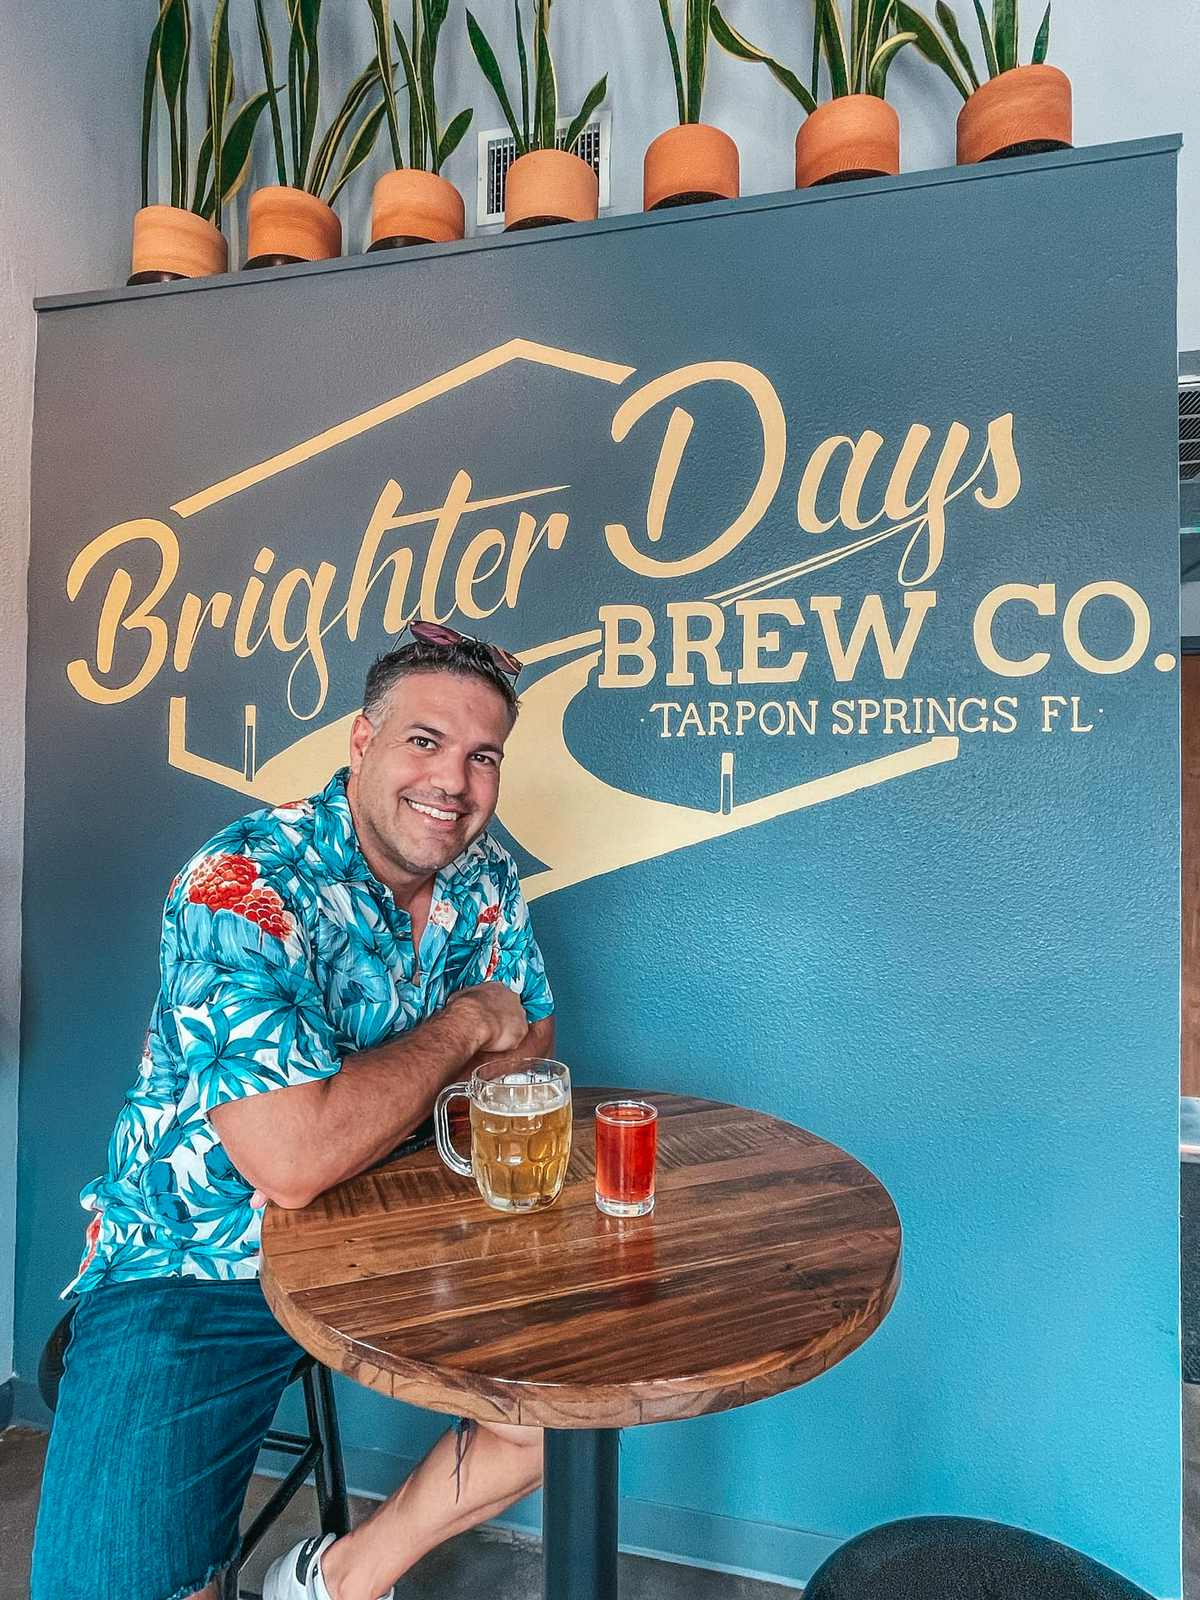 Man enjoying beer at Better Days Brew Co in Tarpon Springs